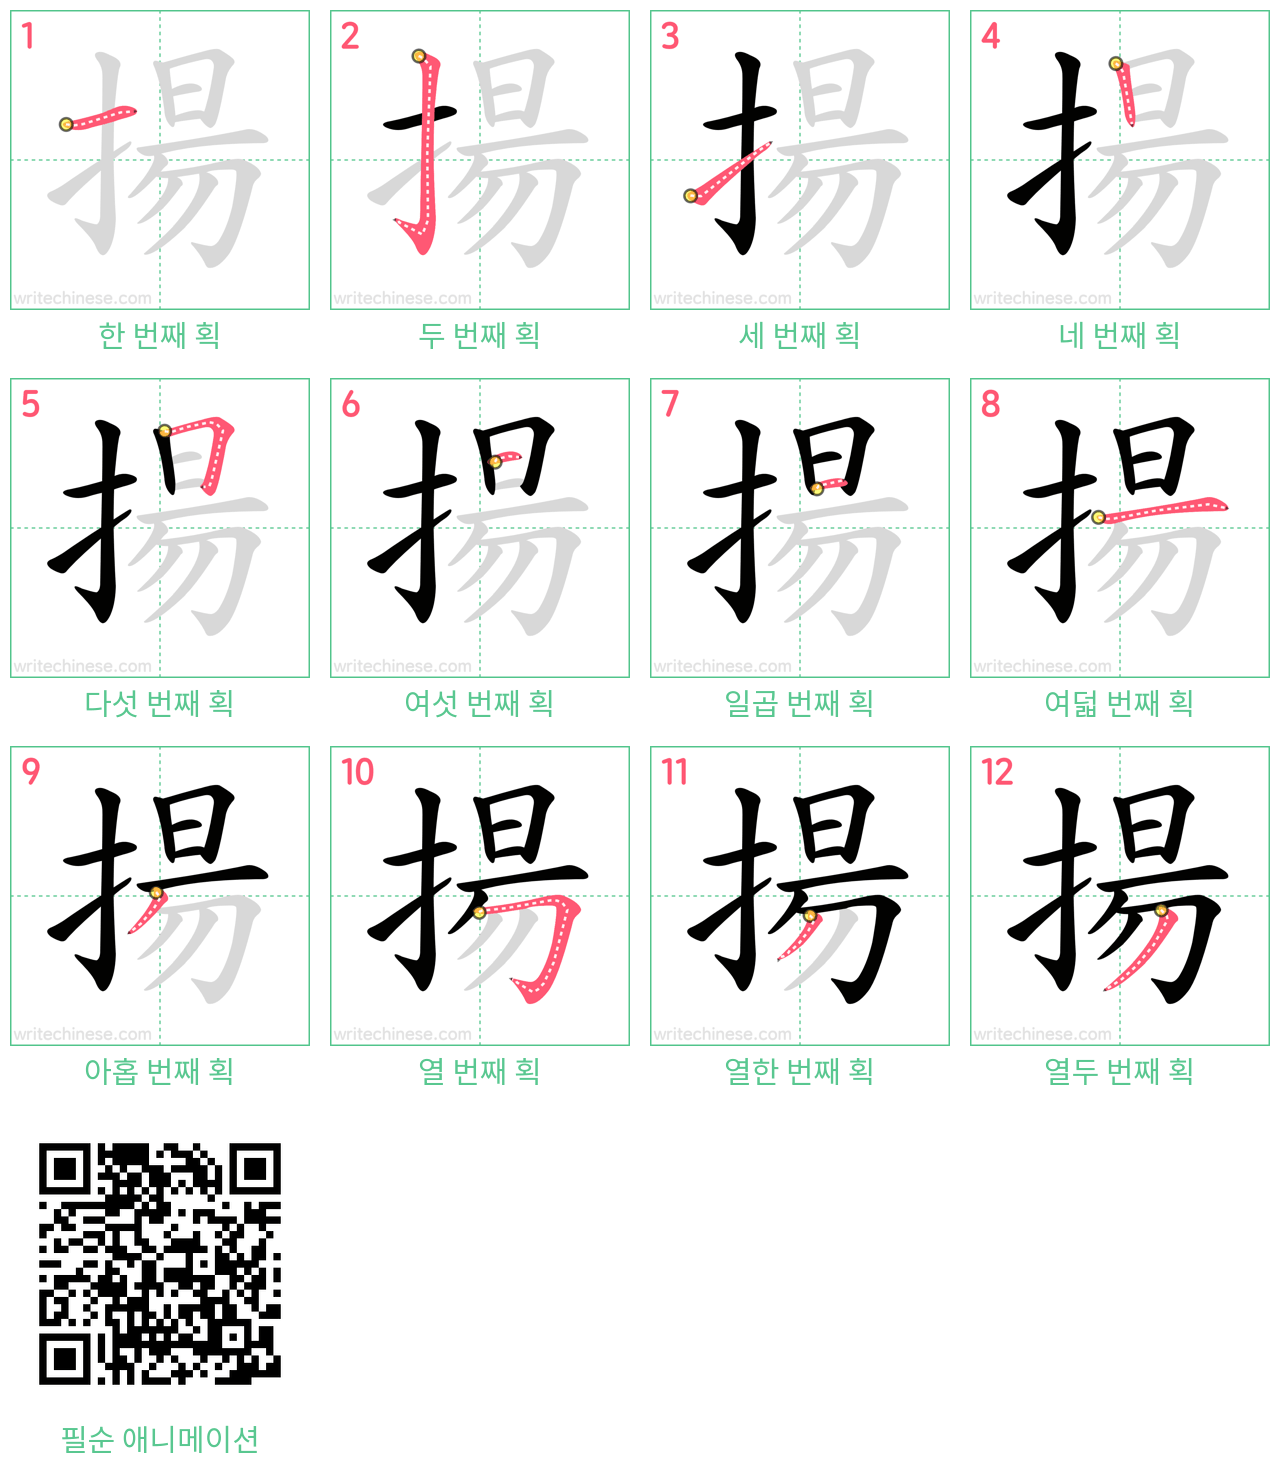 揚 step-by-step stroke order diagrams